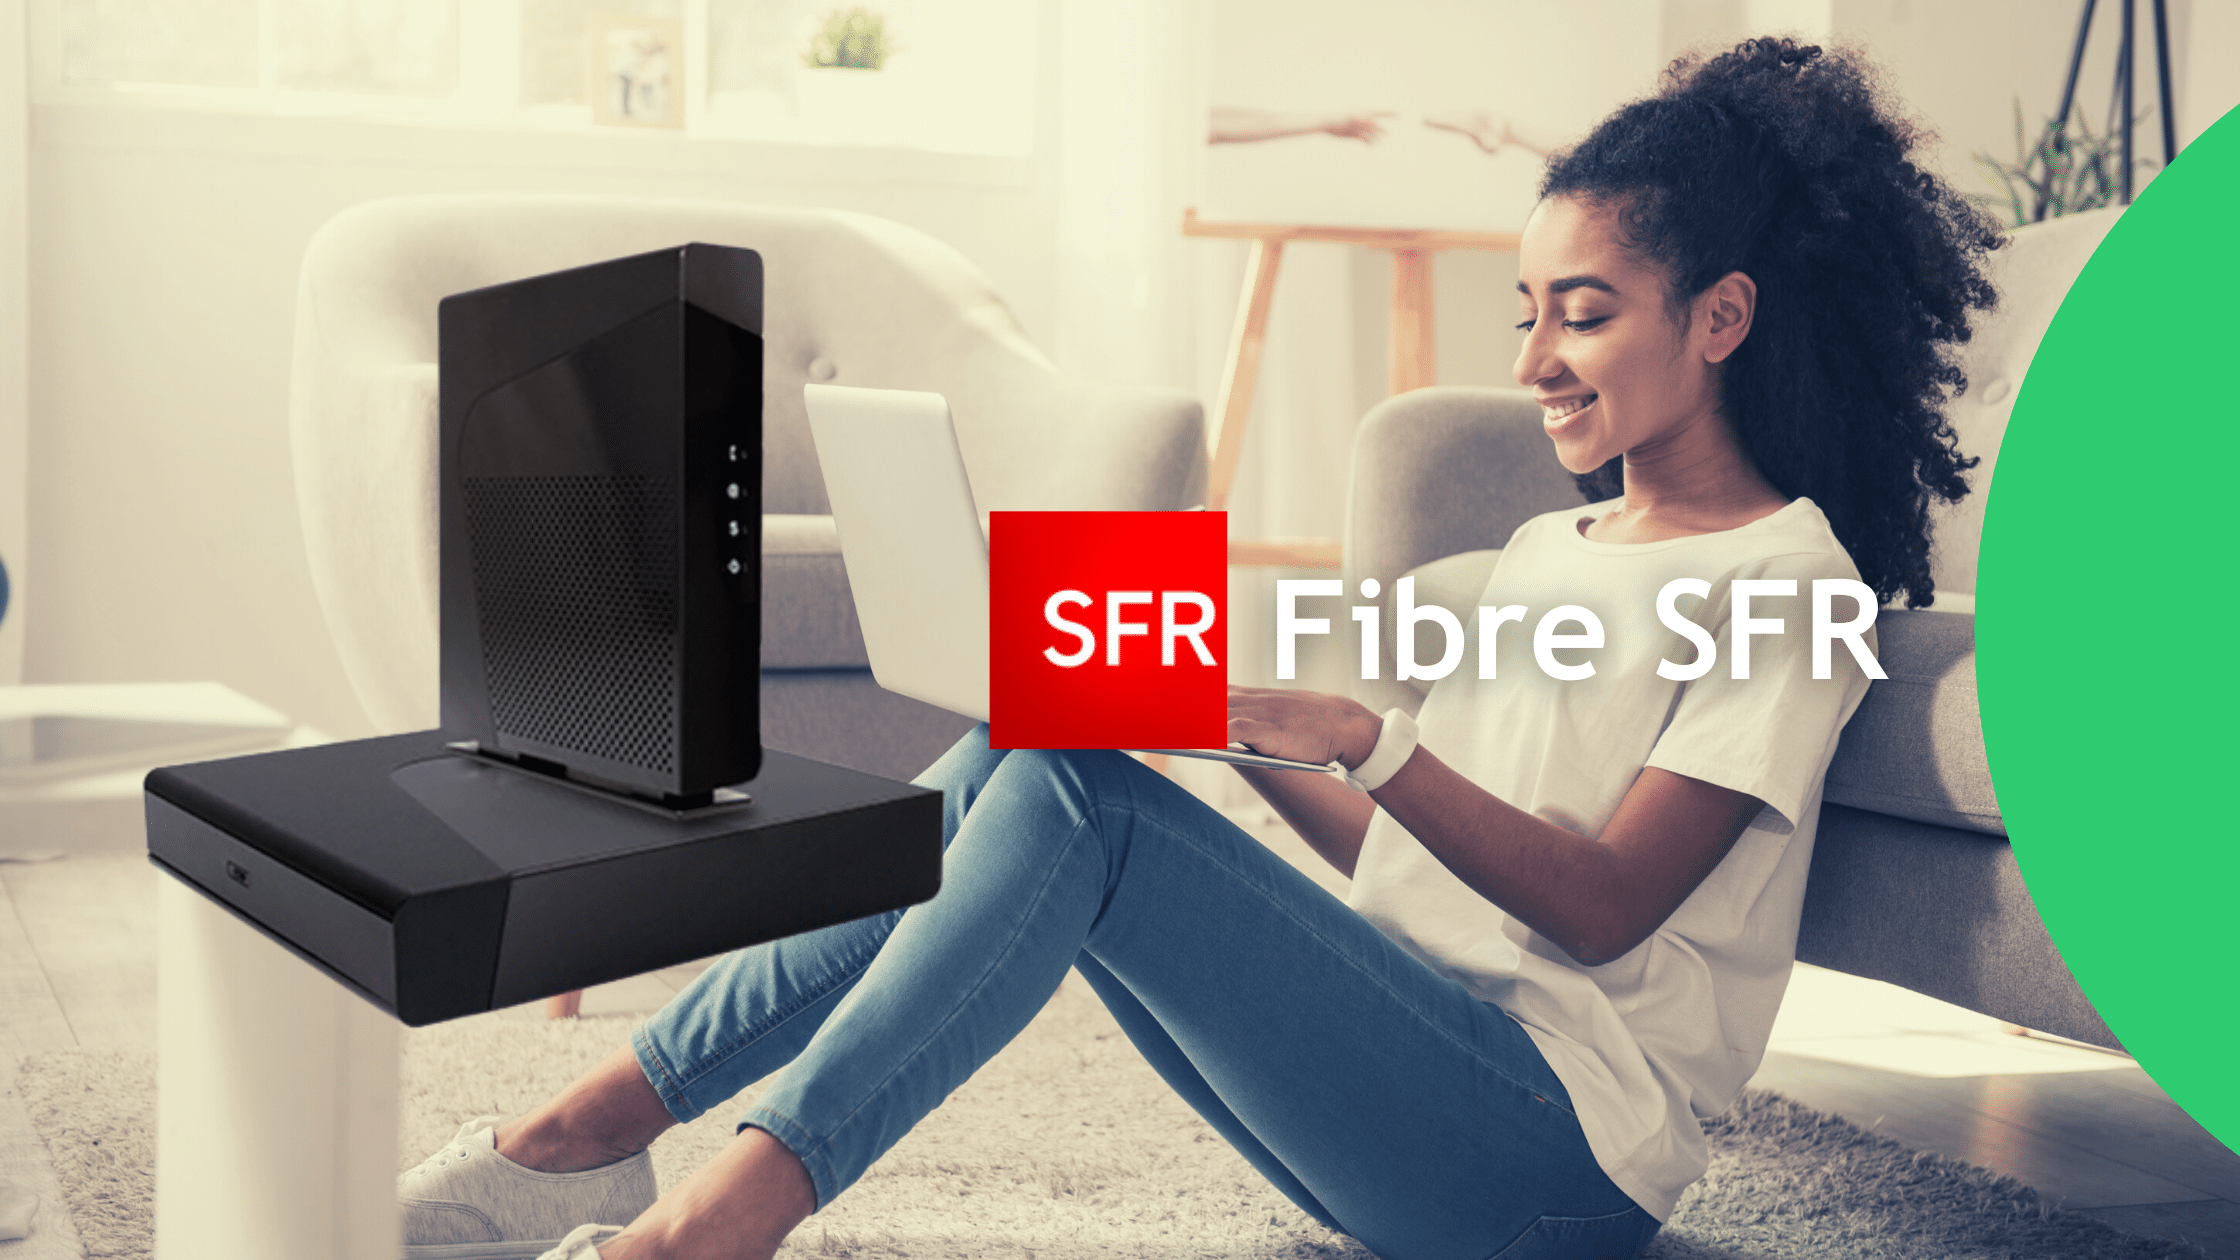 Test fibre SFR